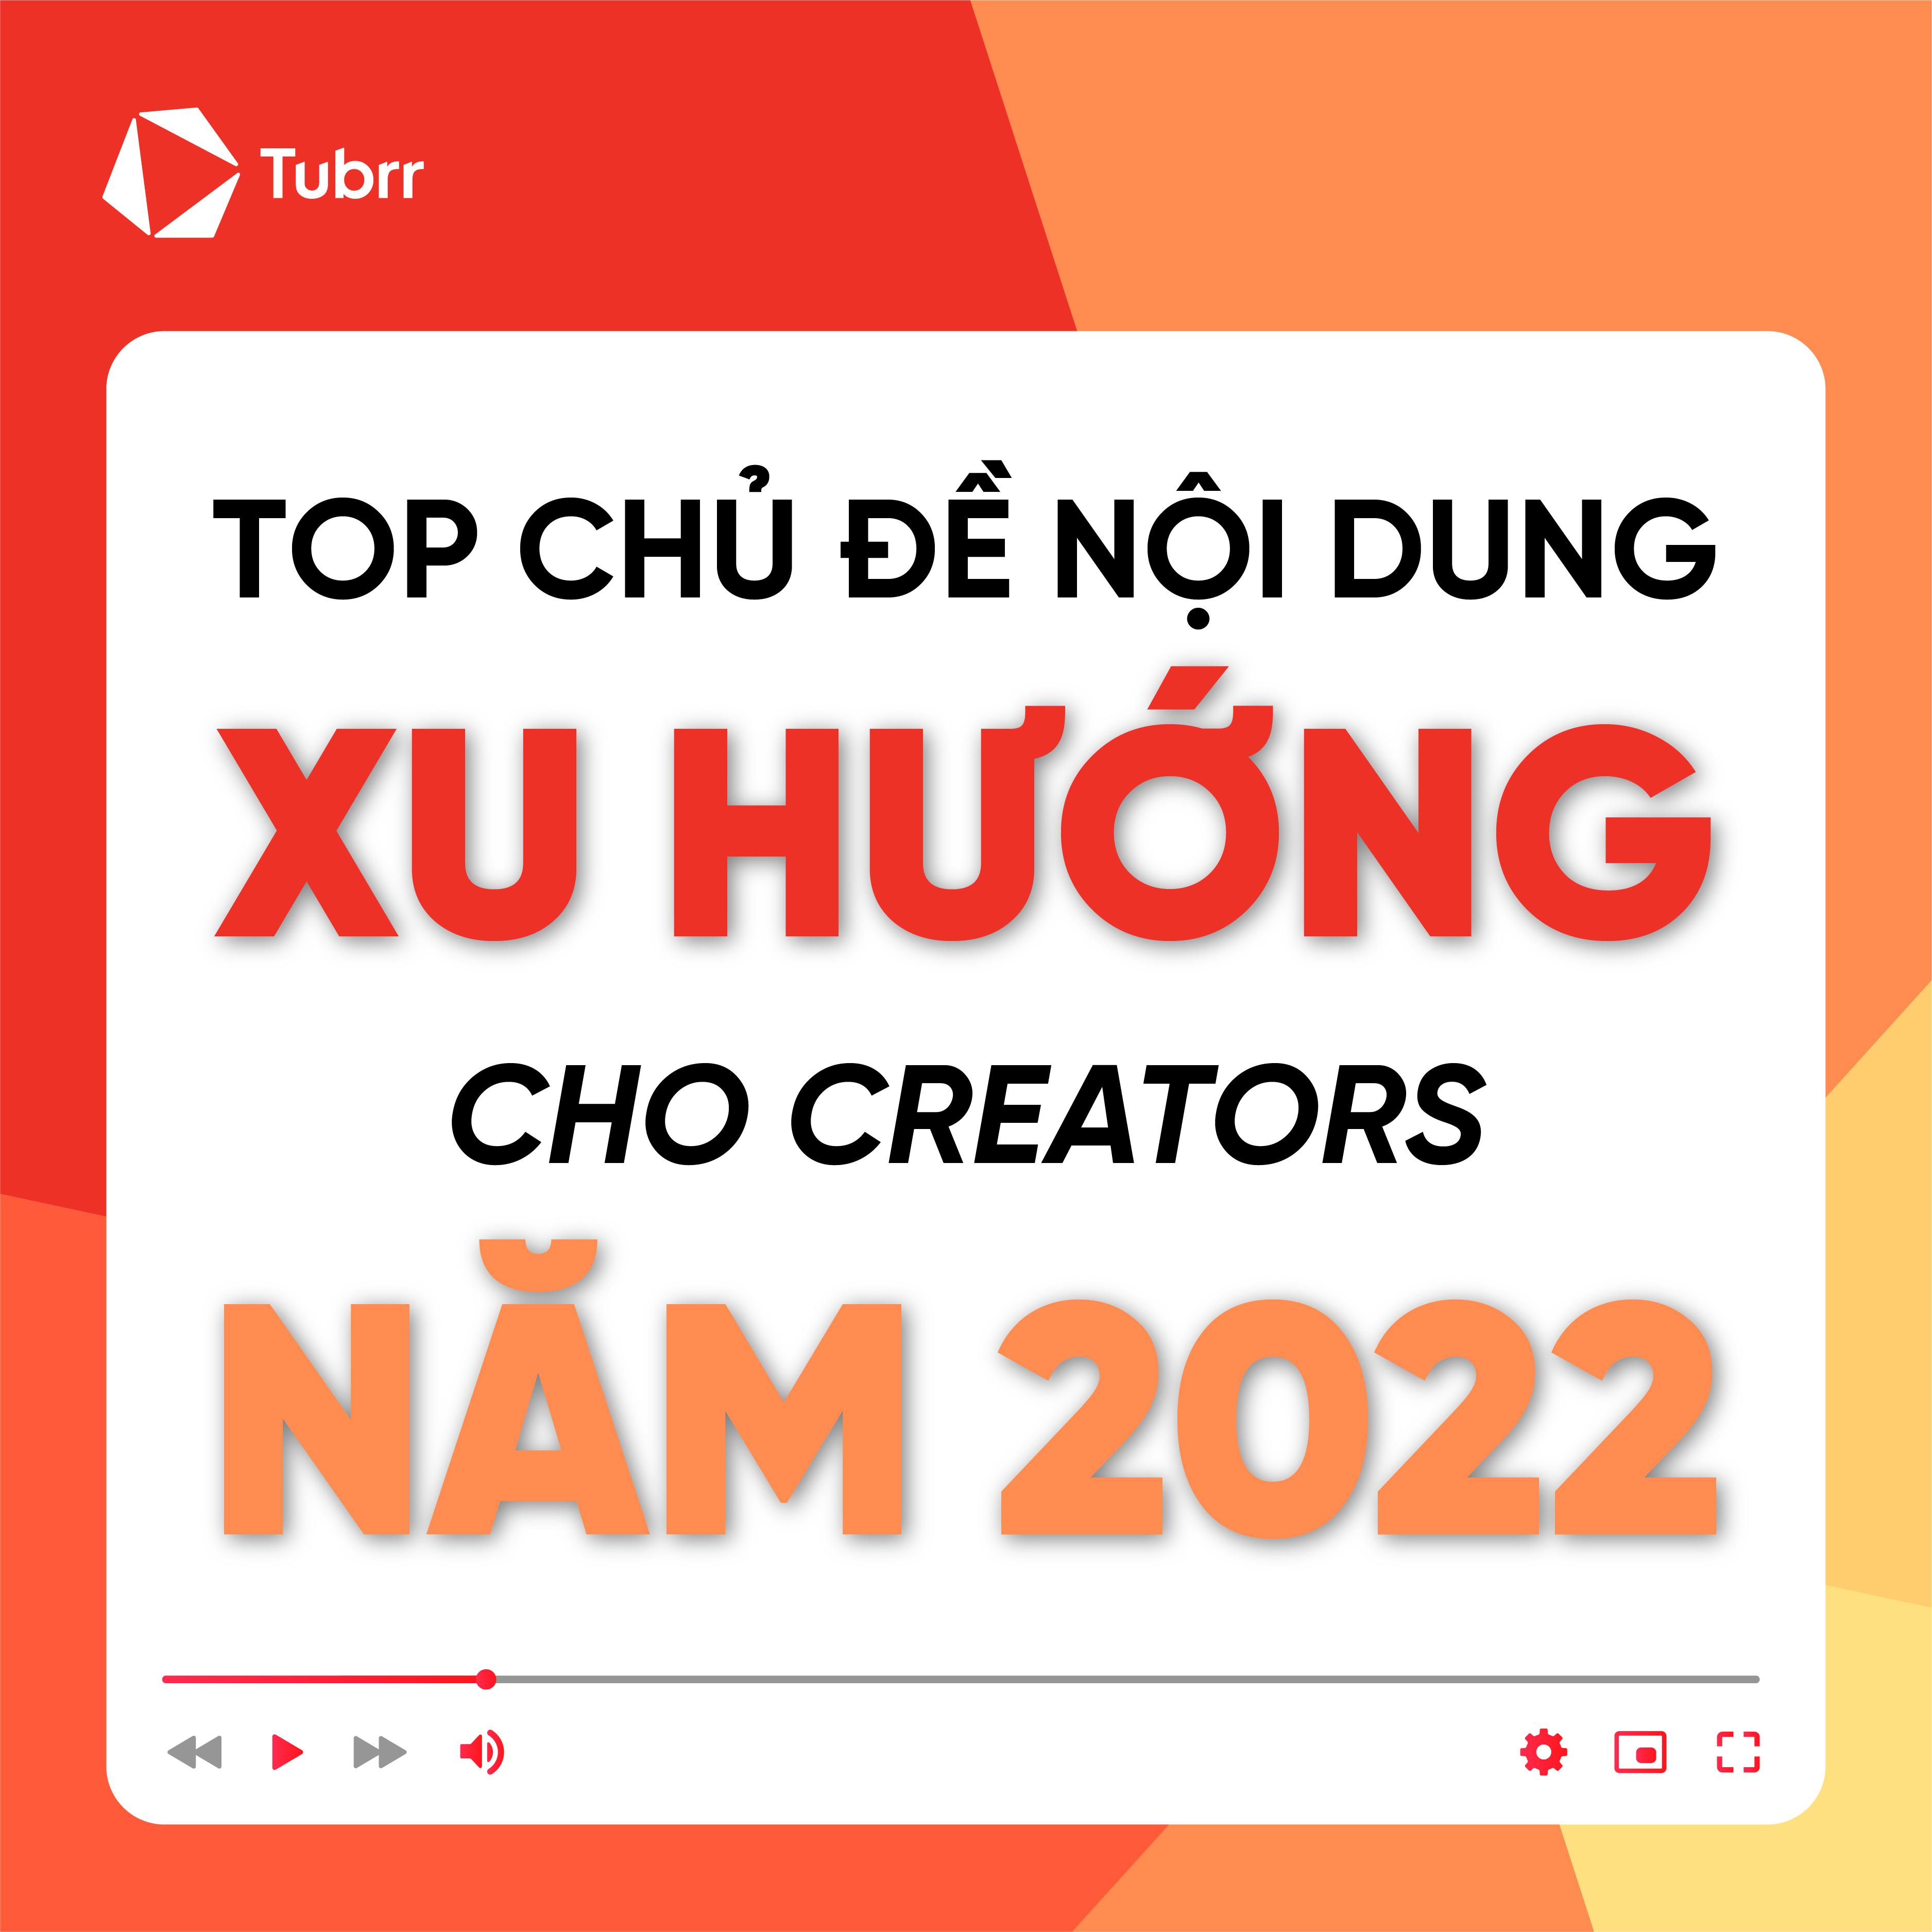 Top chủ đề nội dung xu hướng cho Creators năm 2022